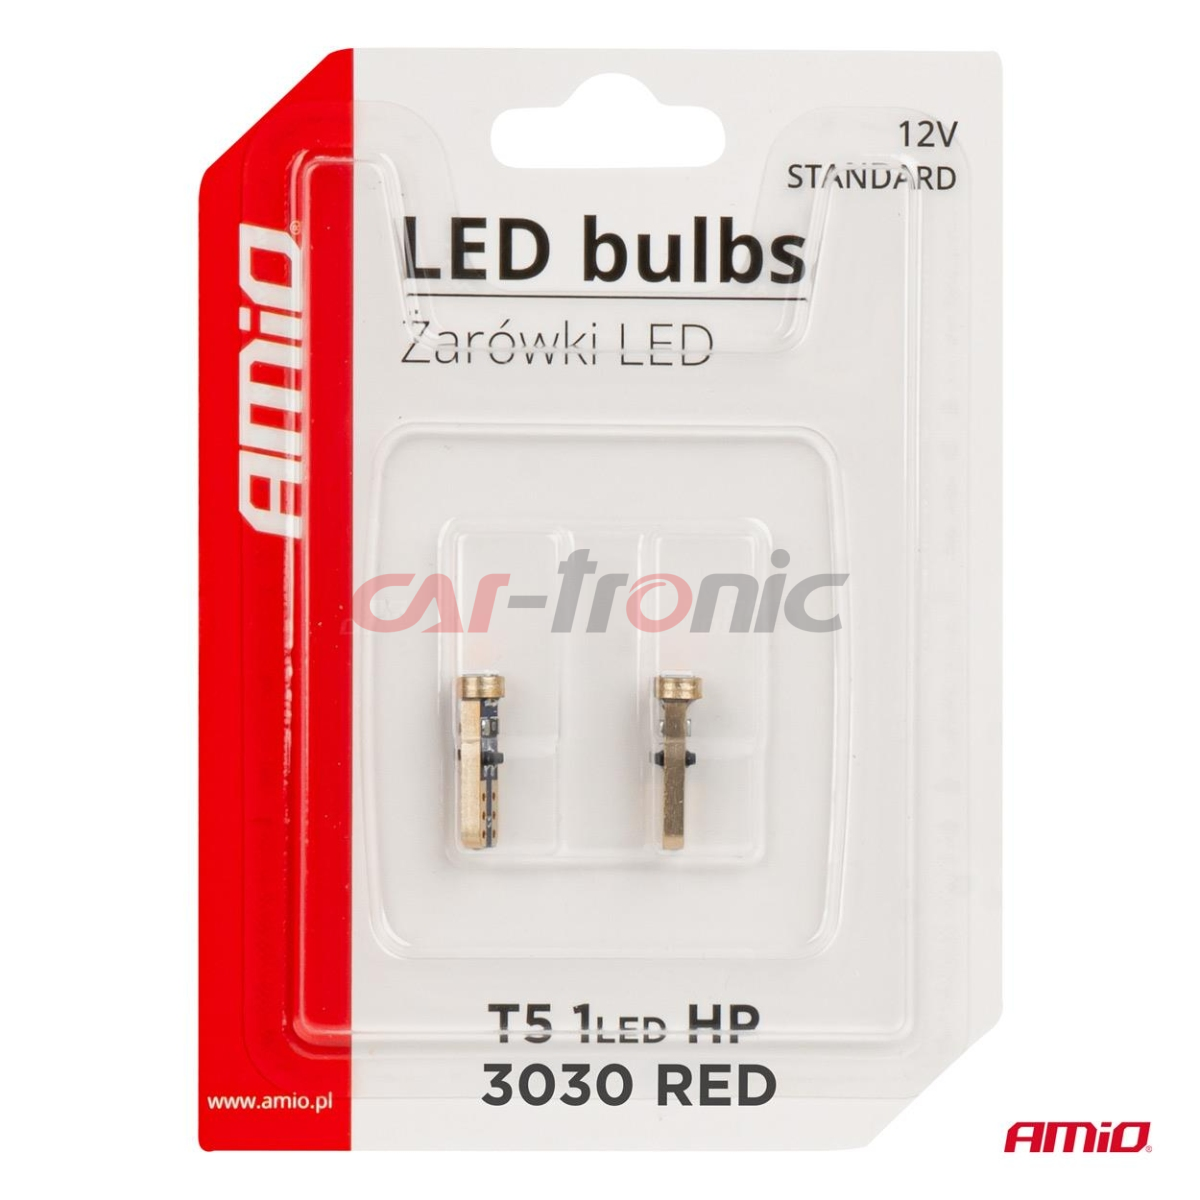 Żarówki LED STANDARD Red czerwone W1W T5 12V 3030 1LED HP AMIO-03727